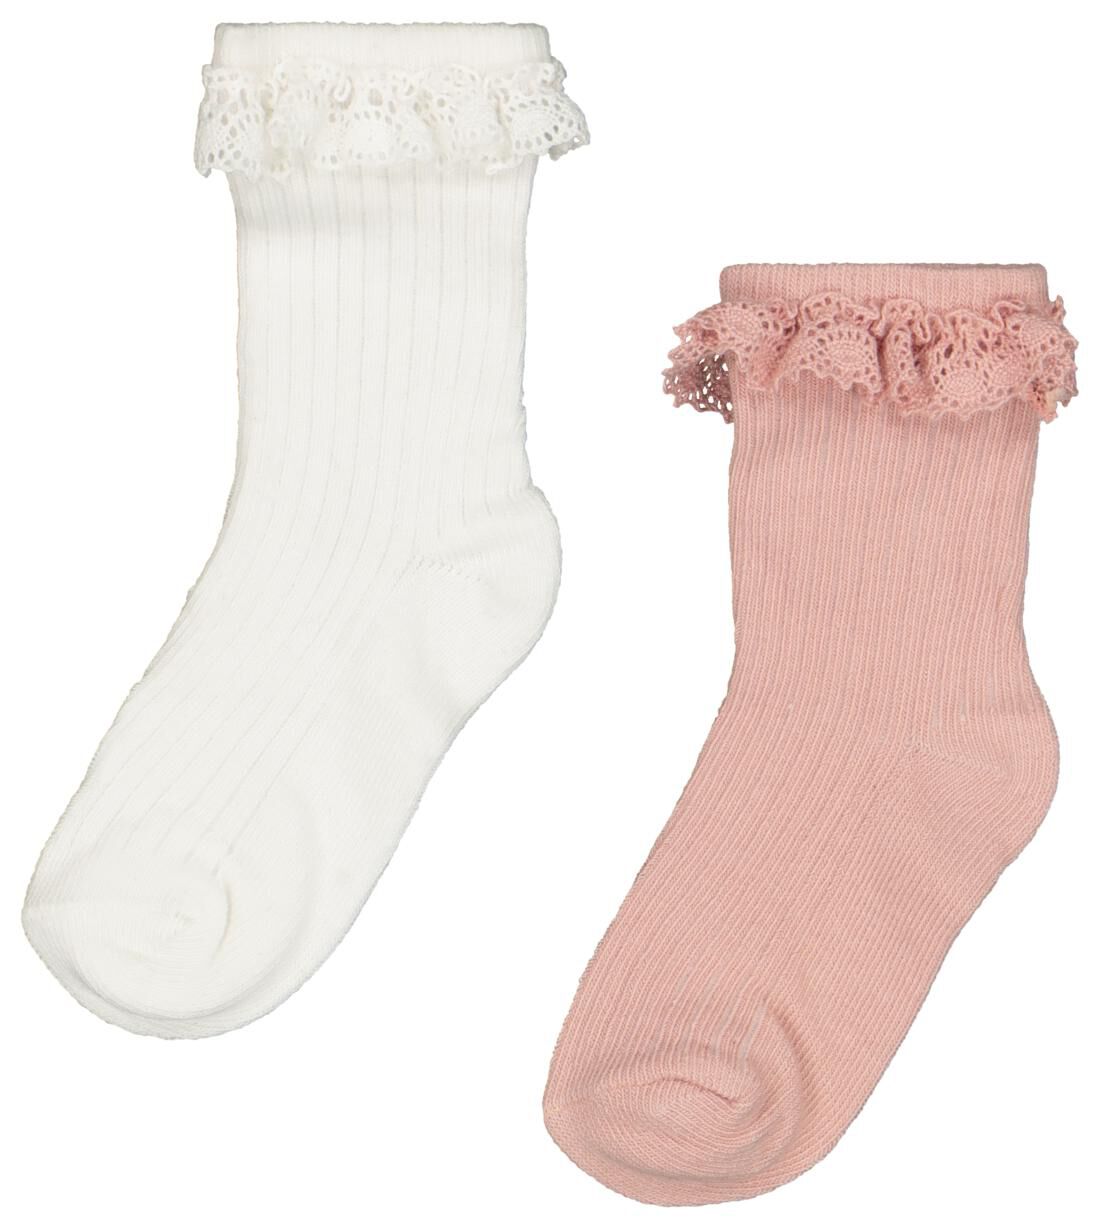 Kleding Meisjeskleding Sokken & Beenwarmers Witte of roze kanten babysokken 